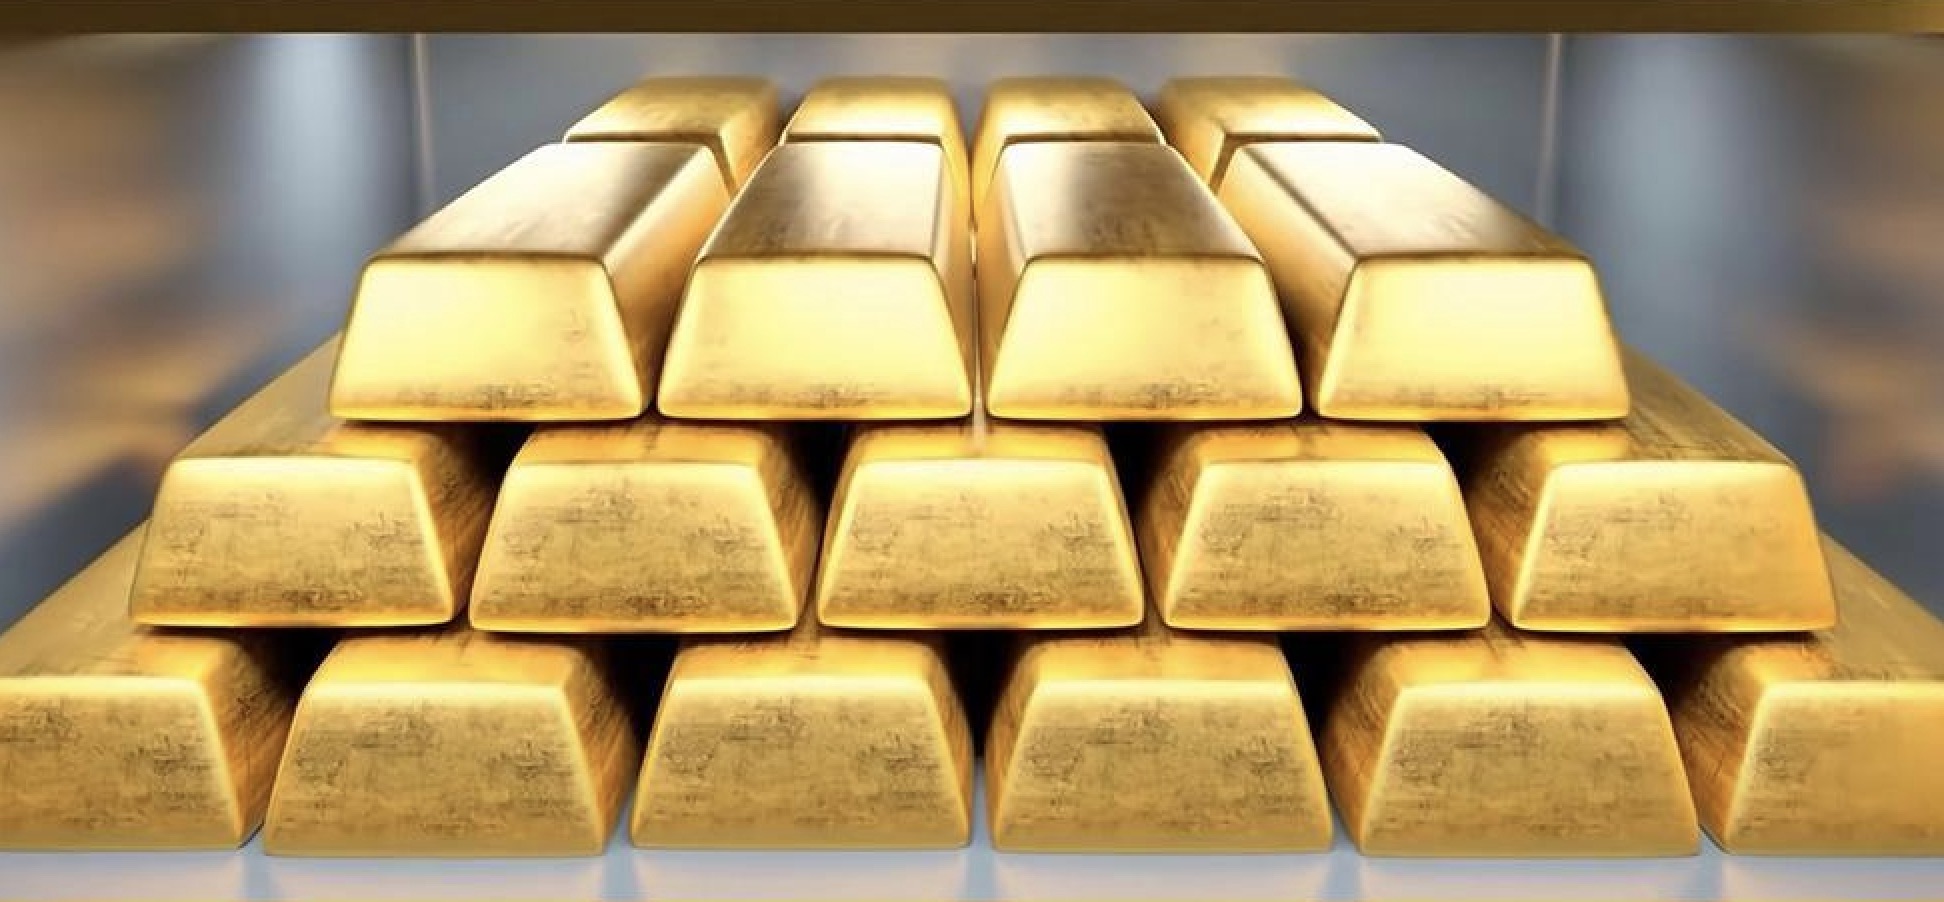 Pengingat perdagangan emas: Harga emas berada di bawah tekanan pada rata-rata pergerakan 21 hari, dan pasar khawatir Powell akan berubah menjadi hawkish